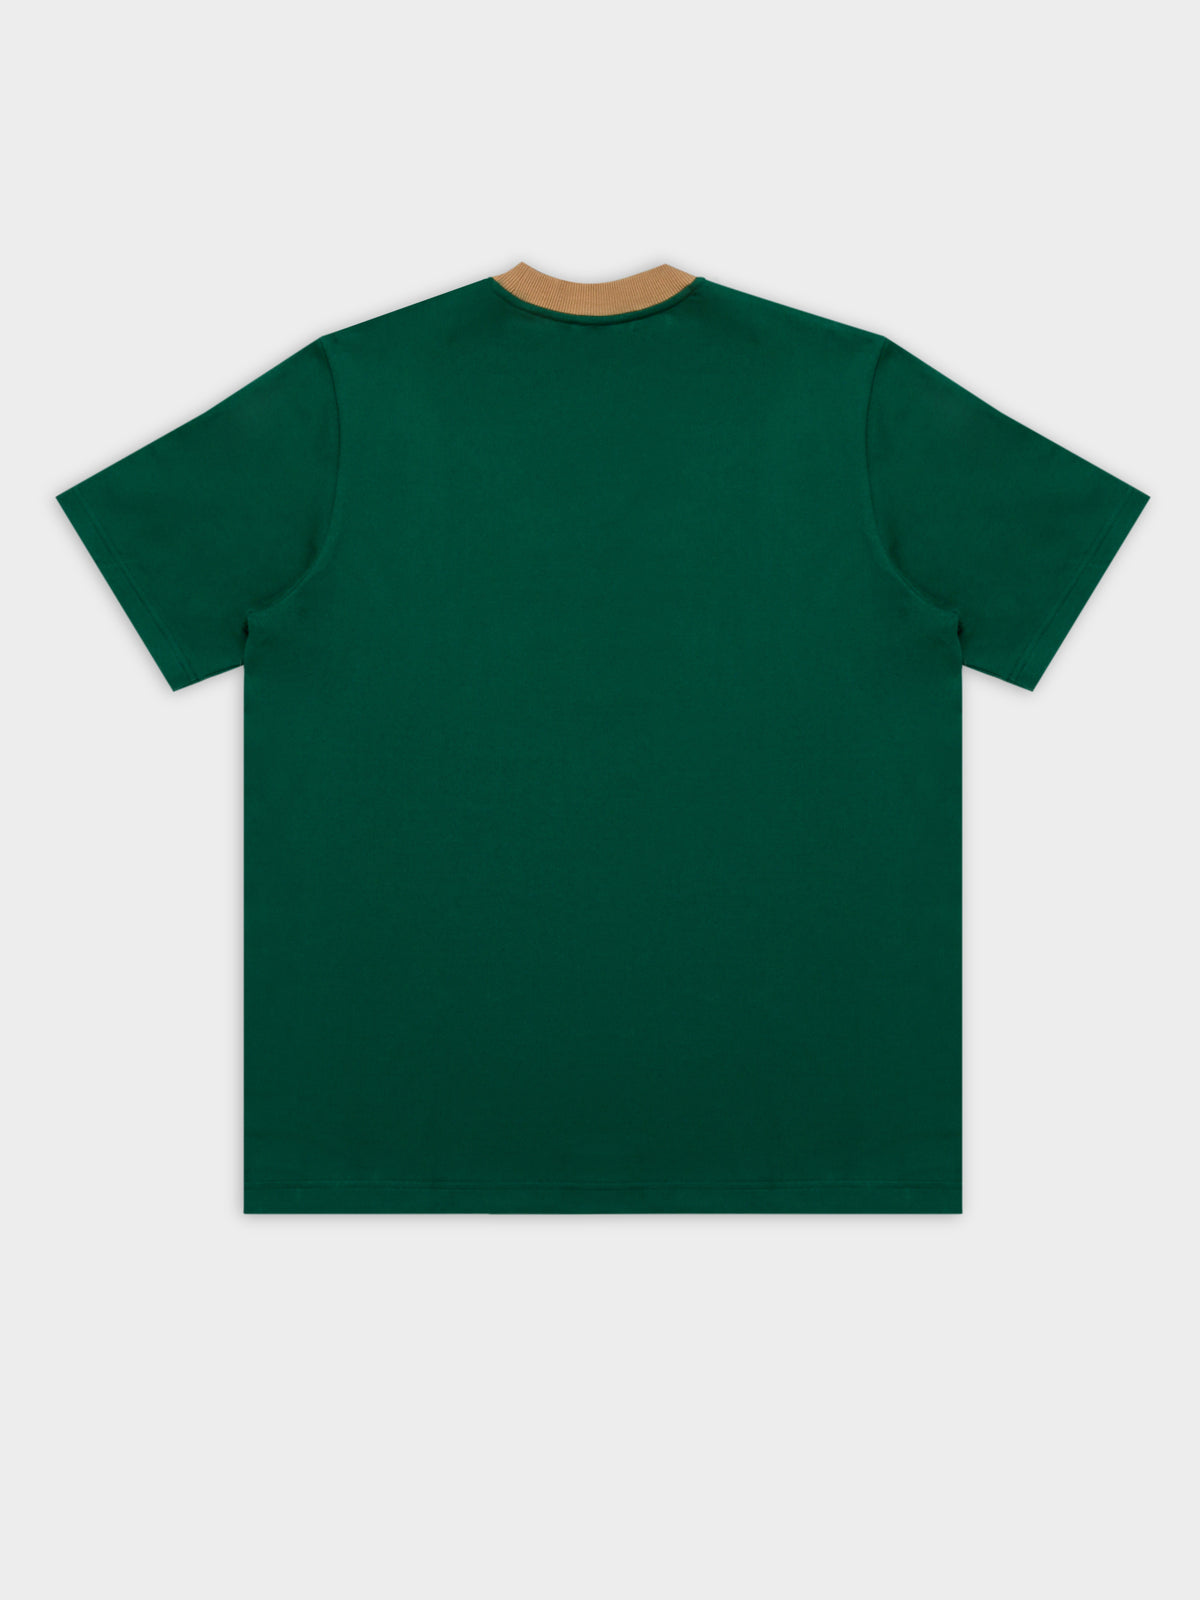 Trefoil T-Shirt in Dark Green